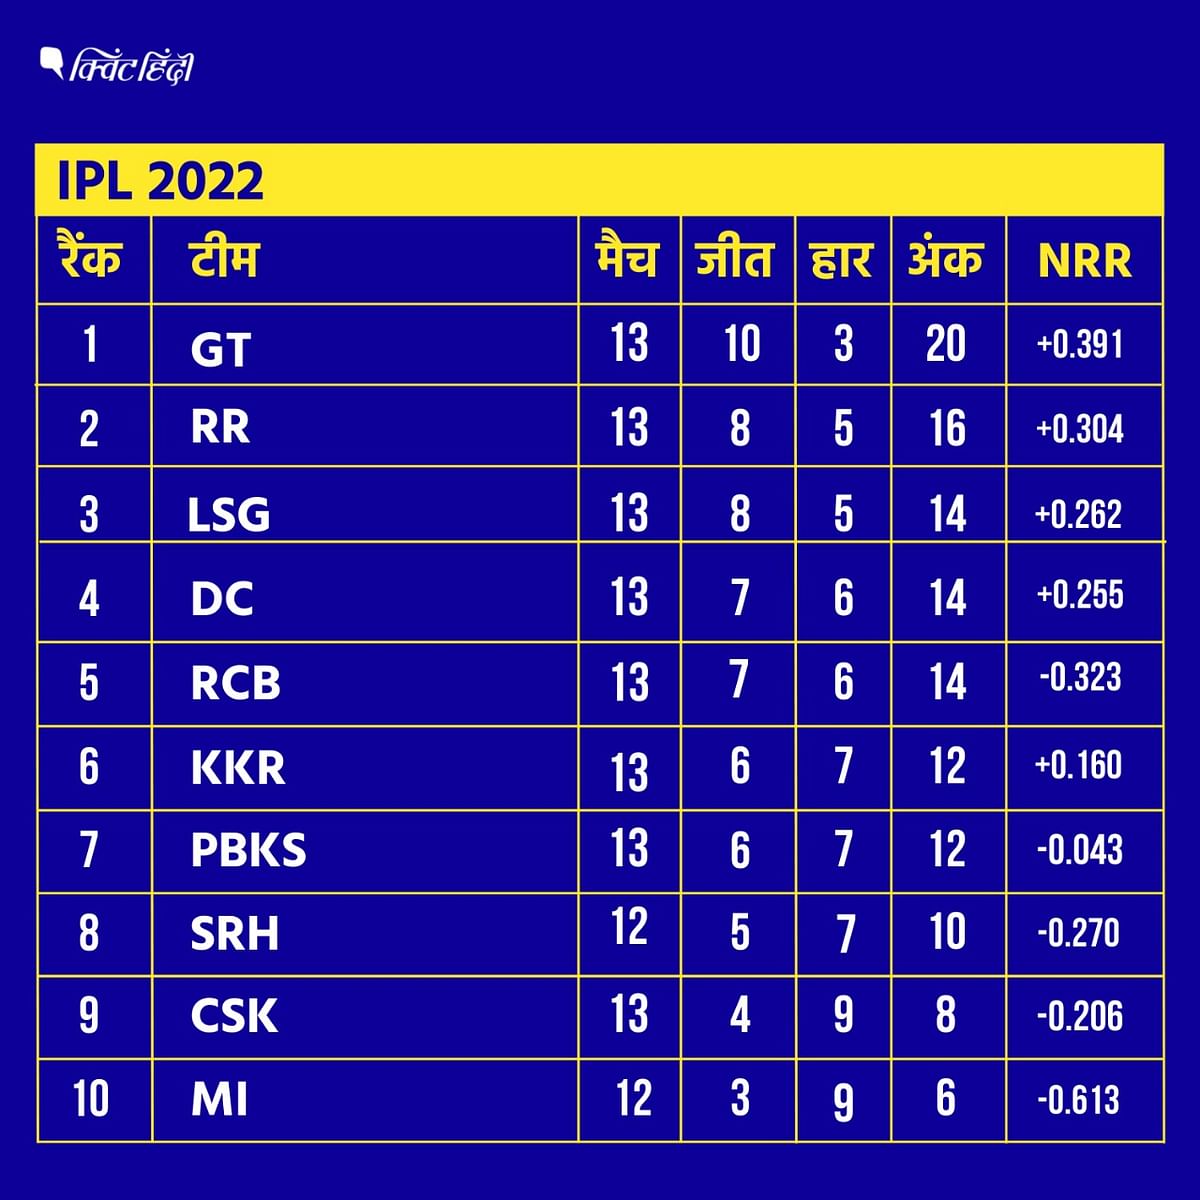 IPL 2022 points table playoff update: दिल्ली कैपिटल्स अंक तालिका में 13 मैचों में 14 अंकों के साथ चौथे स्थान पर है